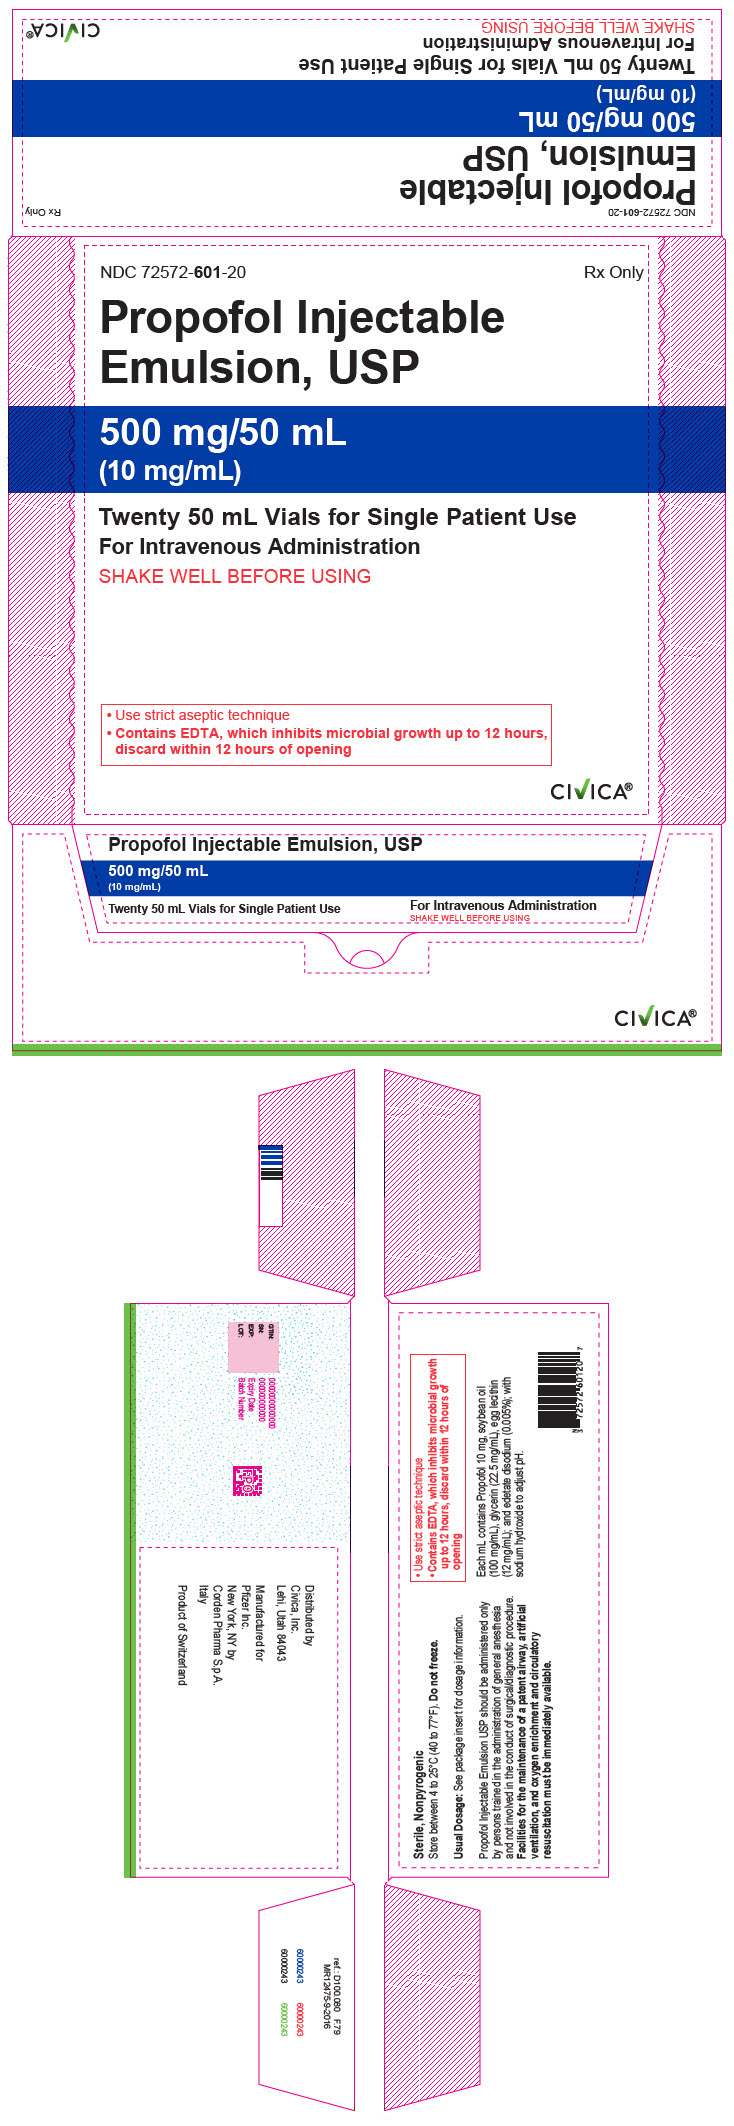 PRINCIPAL DISPLAY PANEL - 50 mL Vial Carton